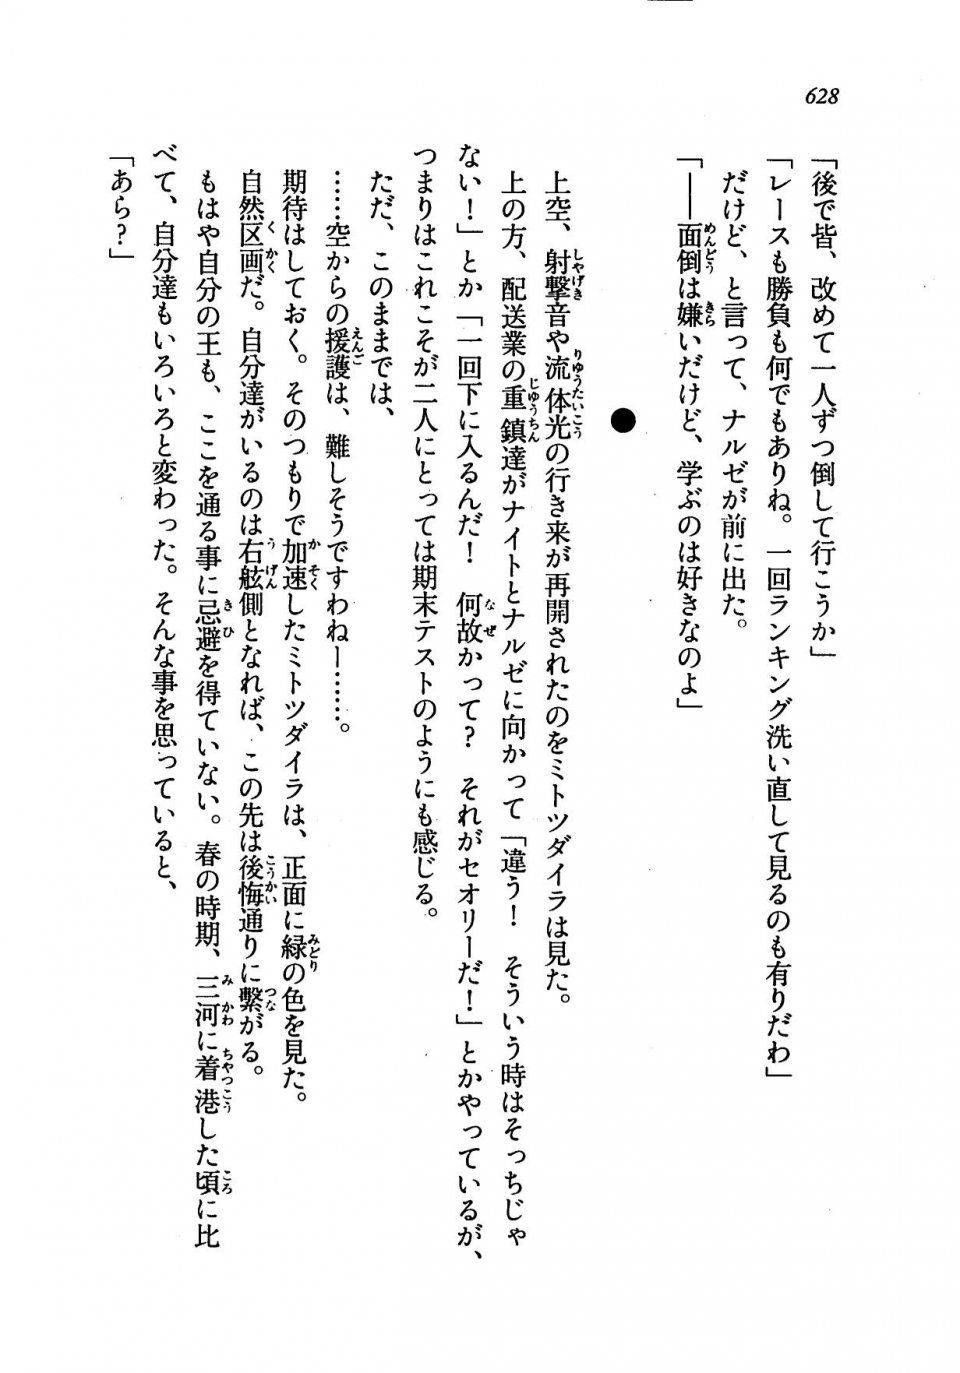 Kyoukai Senjou no Horizon LN Vol 19(8A) - Photo #628